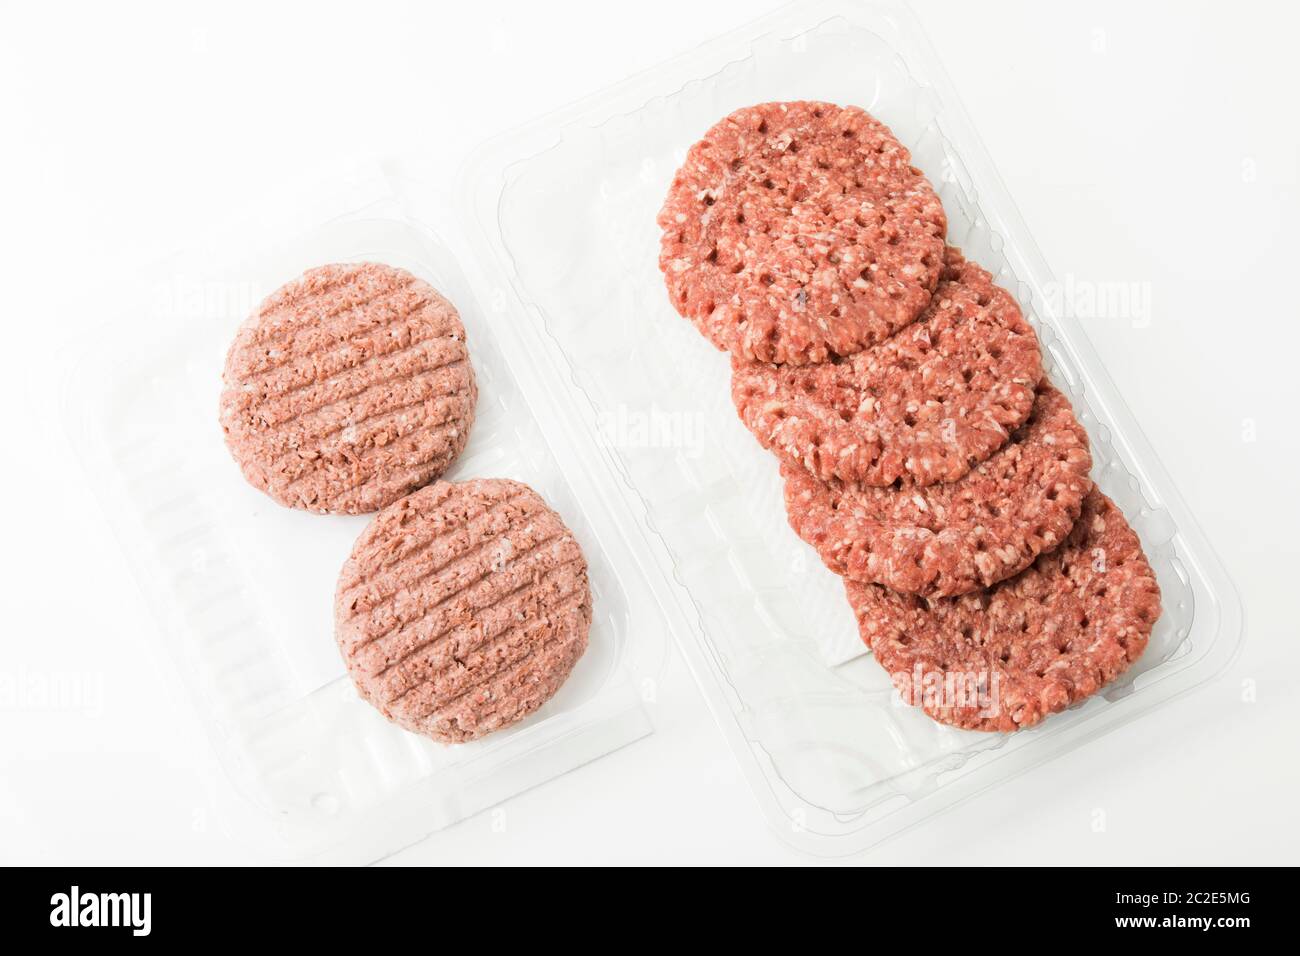 Vegane Burger-Patties im Vergleich zu Rinderpasteten Stockfoto